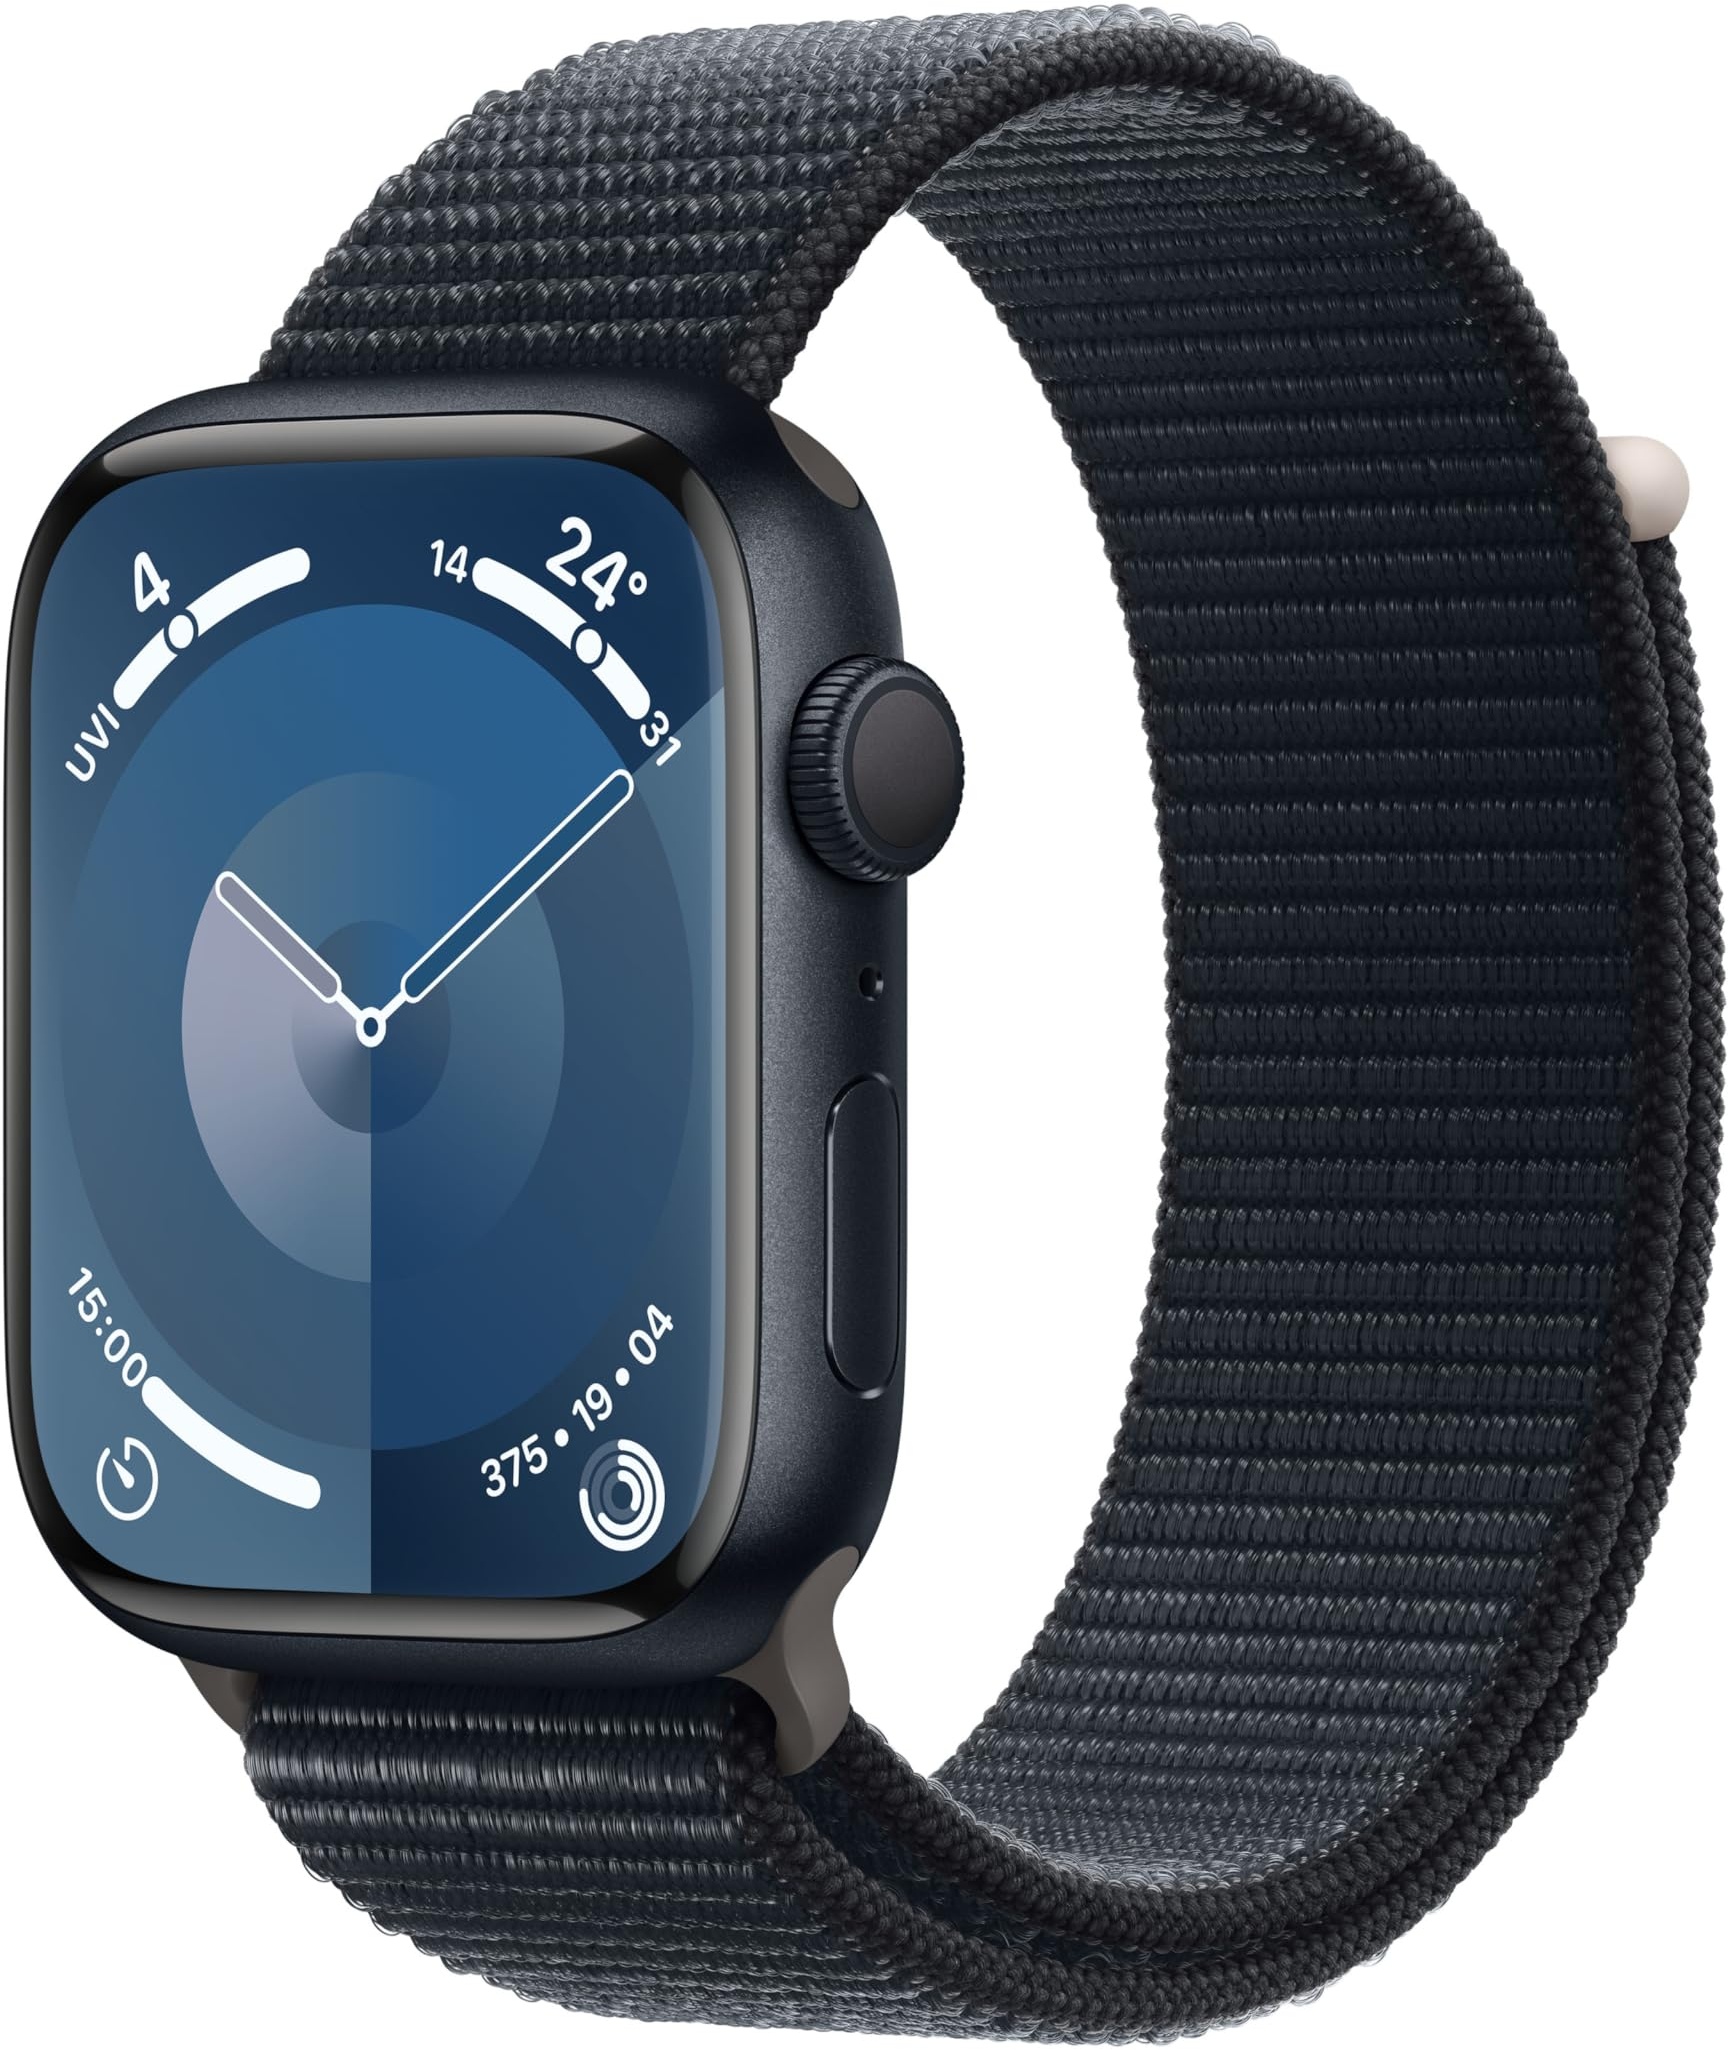 Apple Watch Series 9 (GPS, 45 mm) Smartwatch mit Aluminiumgehäuse und Sport Loop Armband in Mitternacht. Fitnesstracker, Blutsauerstoff und EKG Apps, Always-On Retina Display, CO2 neutral